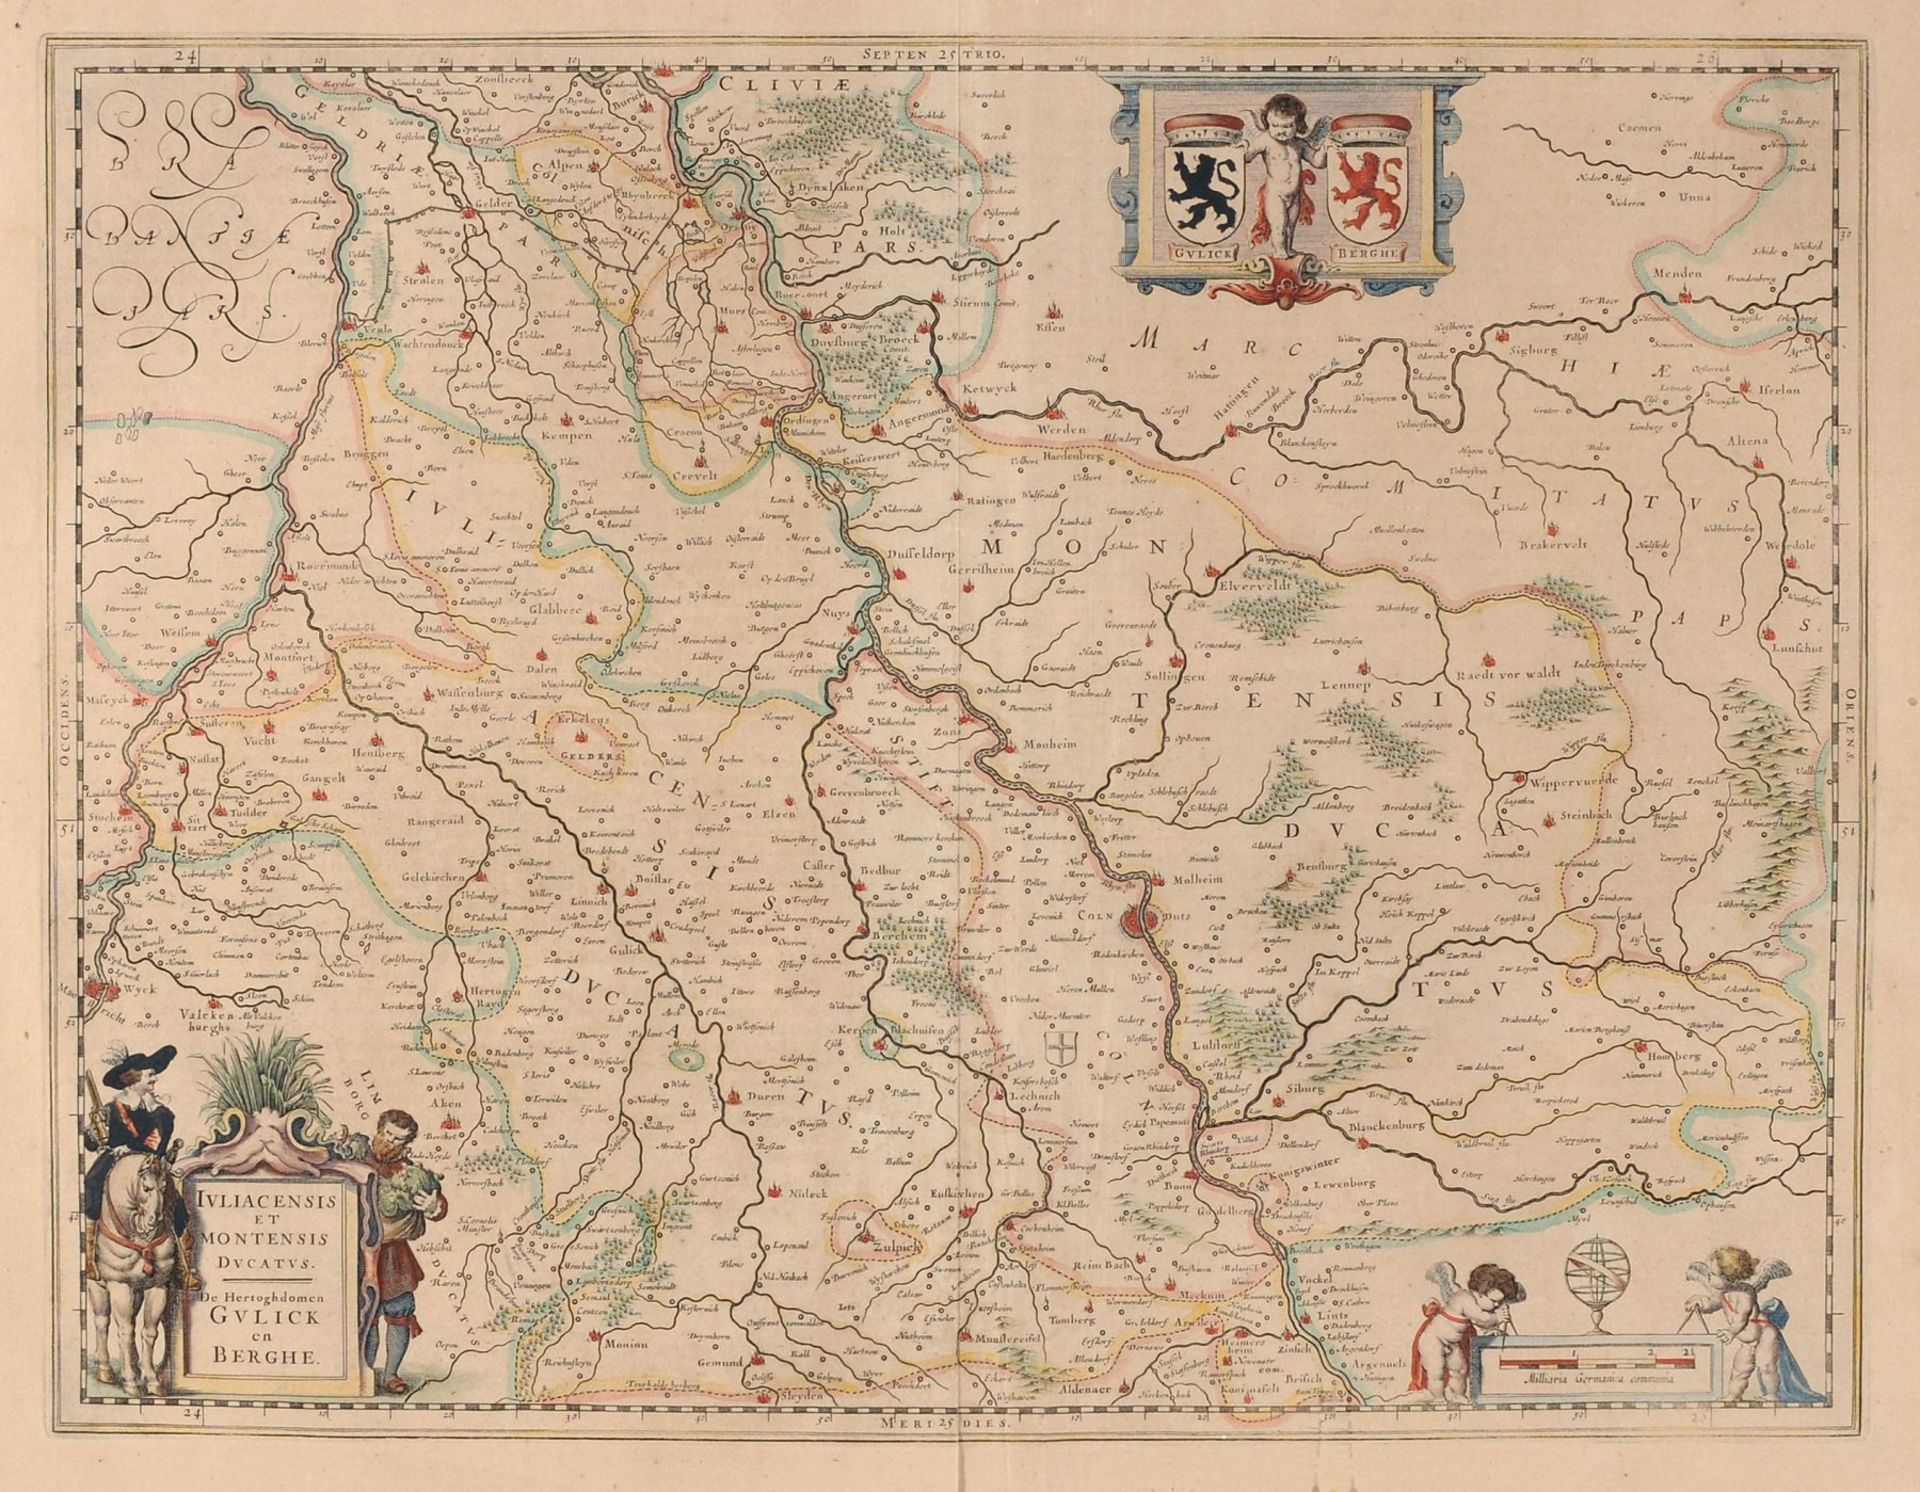 Willem Janszoon Blaeu/ Johannes Willemszoon Blaeu, Juliacensis et Montensis Ducatus - Karte von